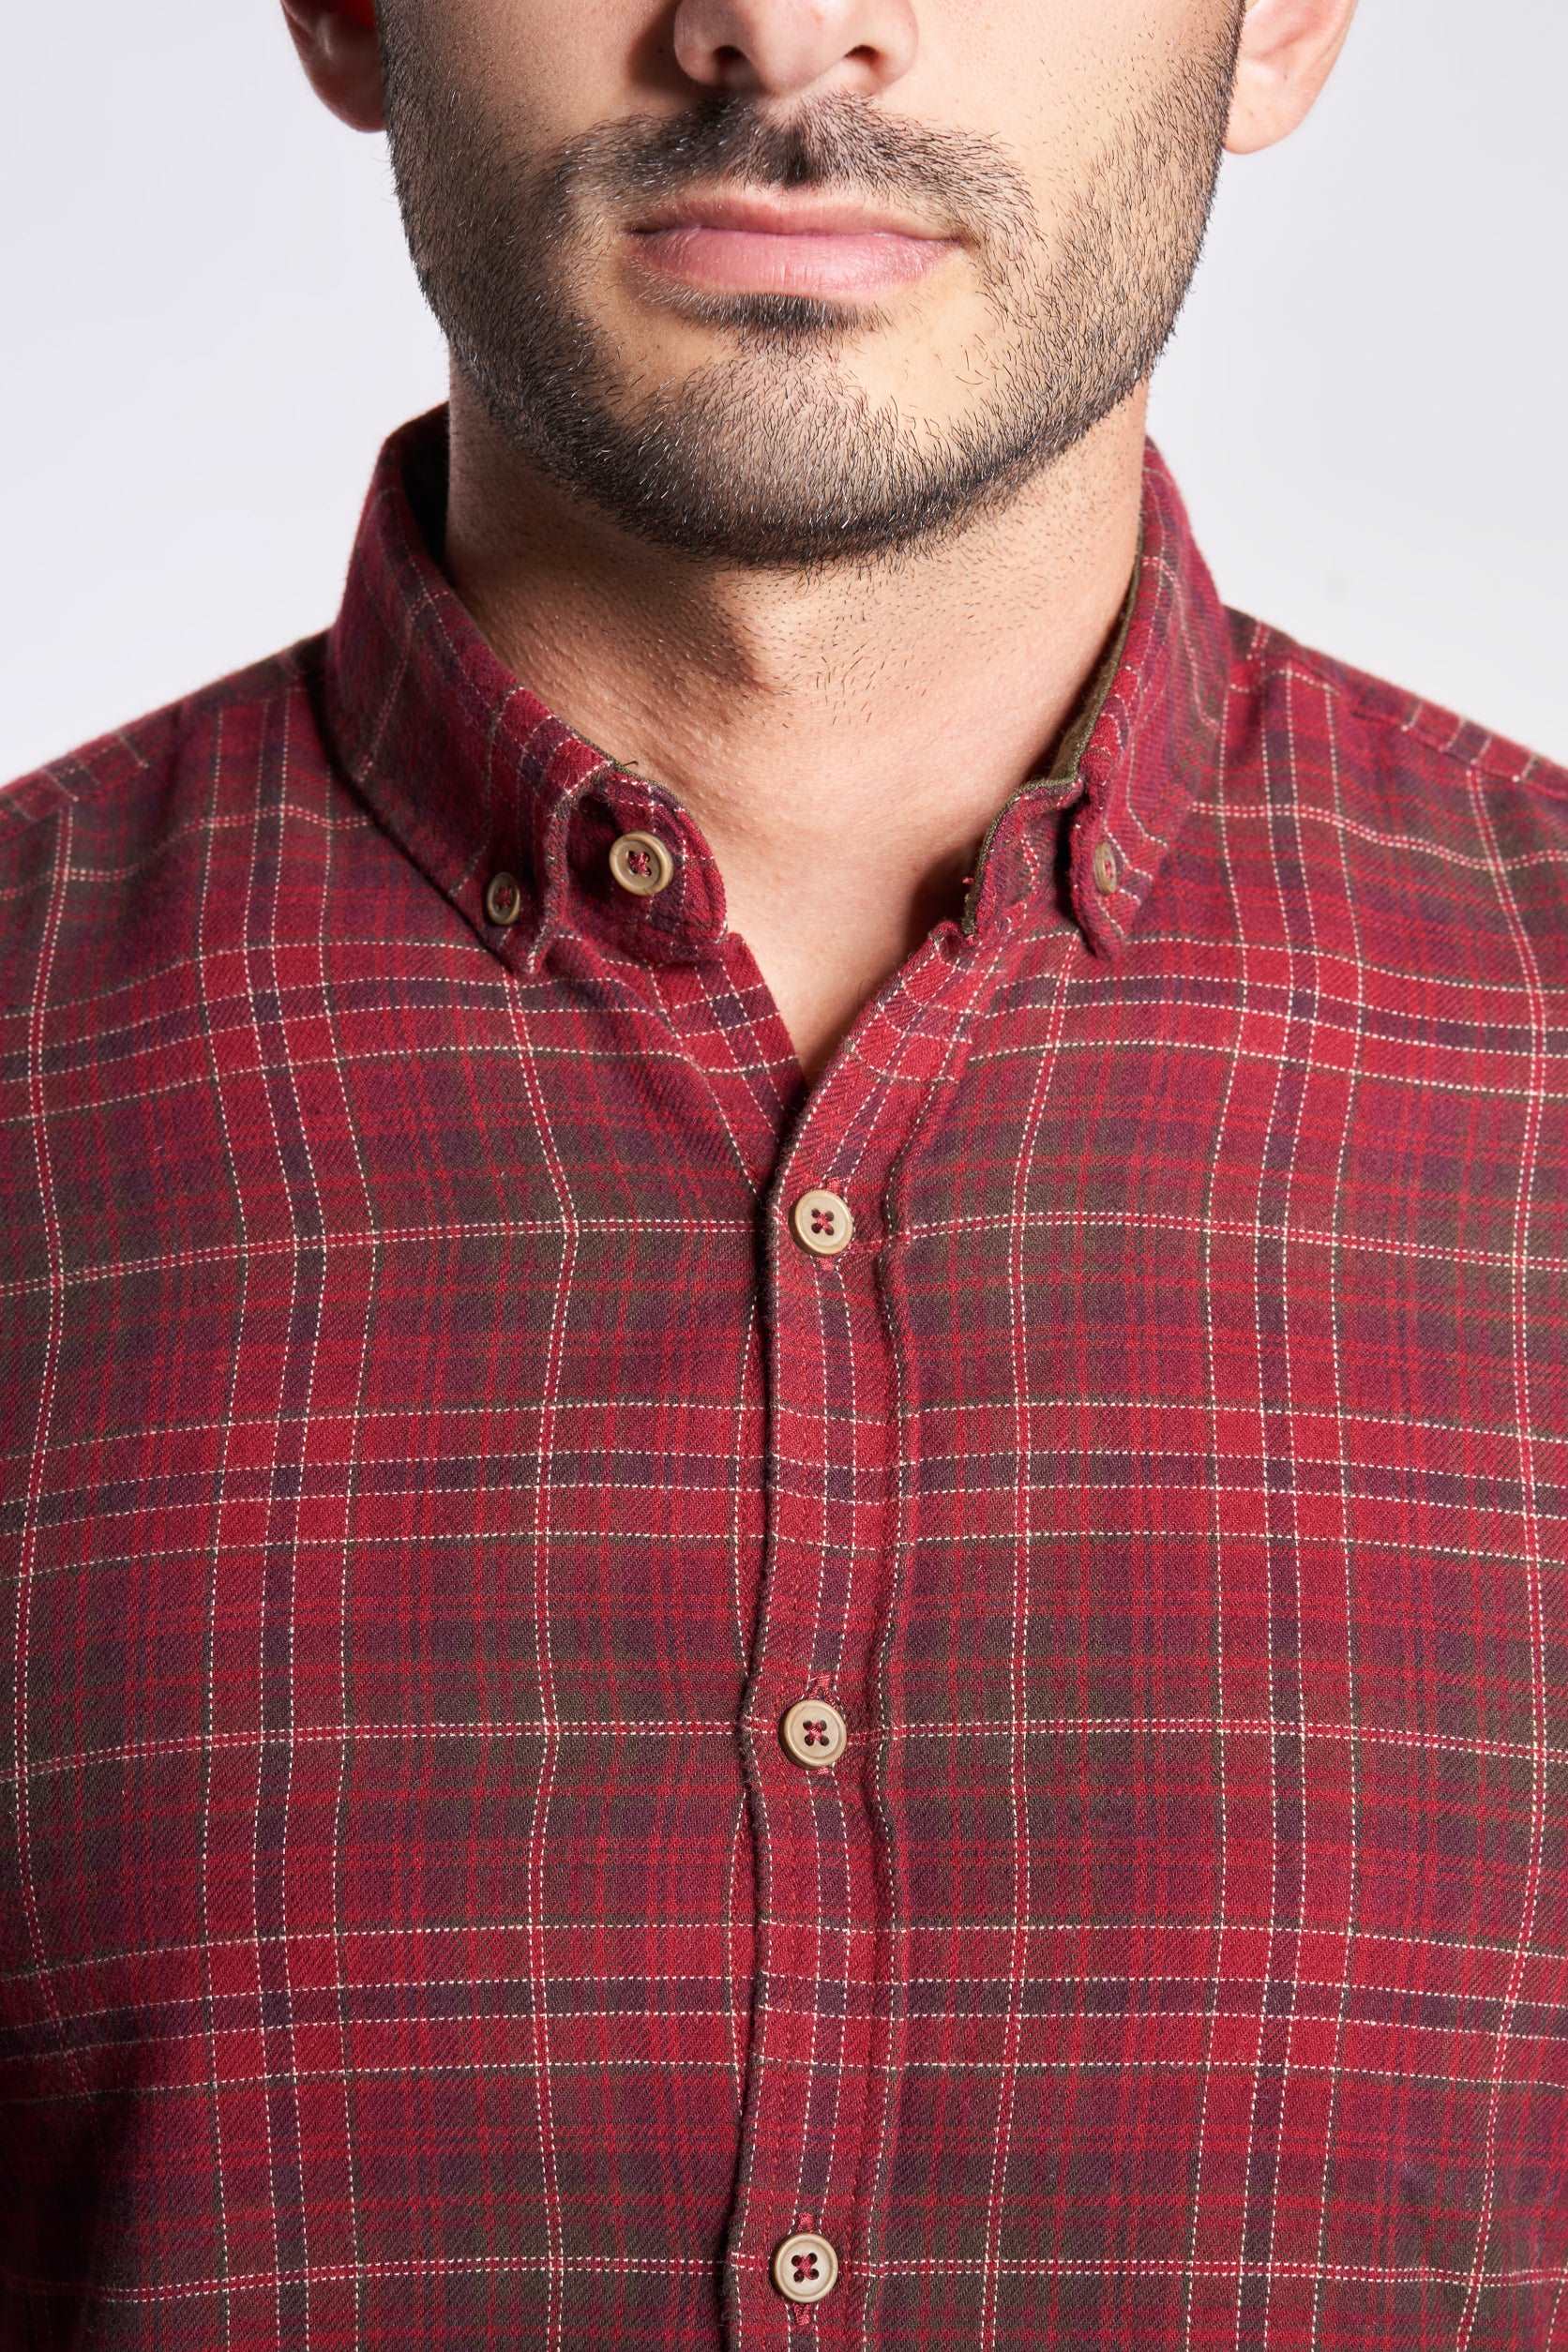 Dark red checks sleeved men's shirt(692)